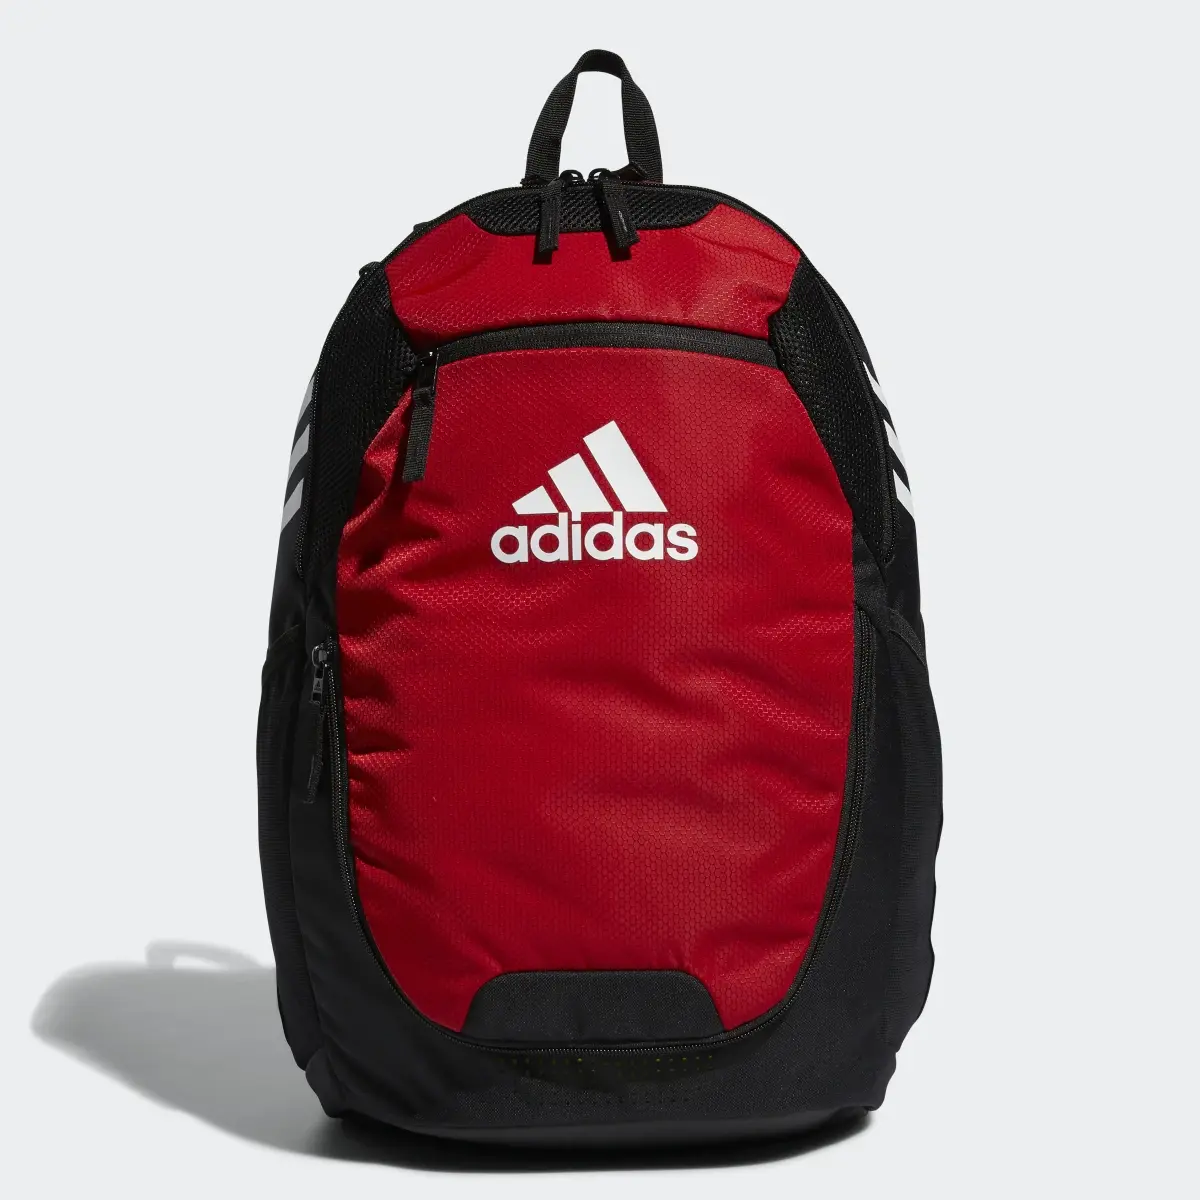 Adidas Stadium Backpack. 1